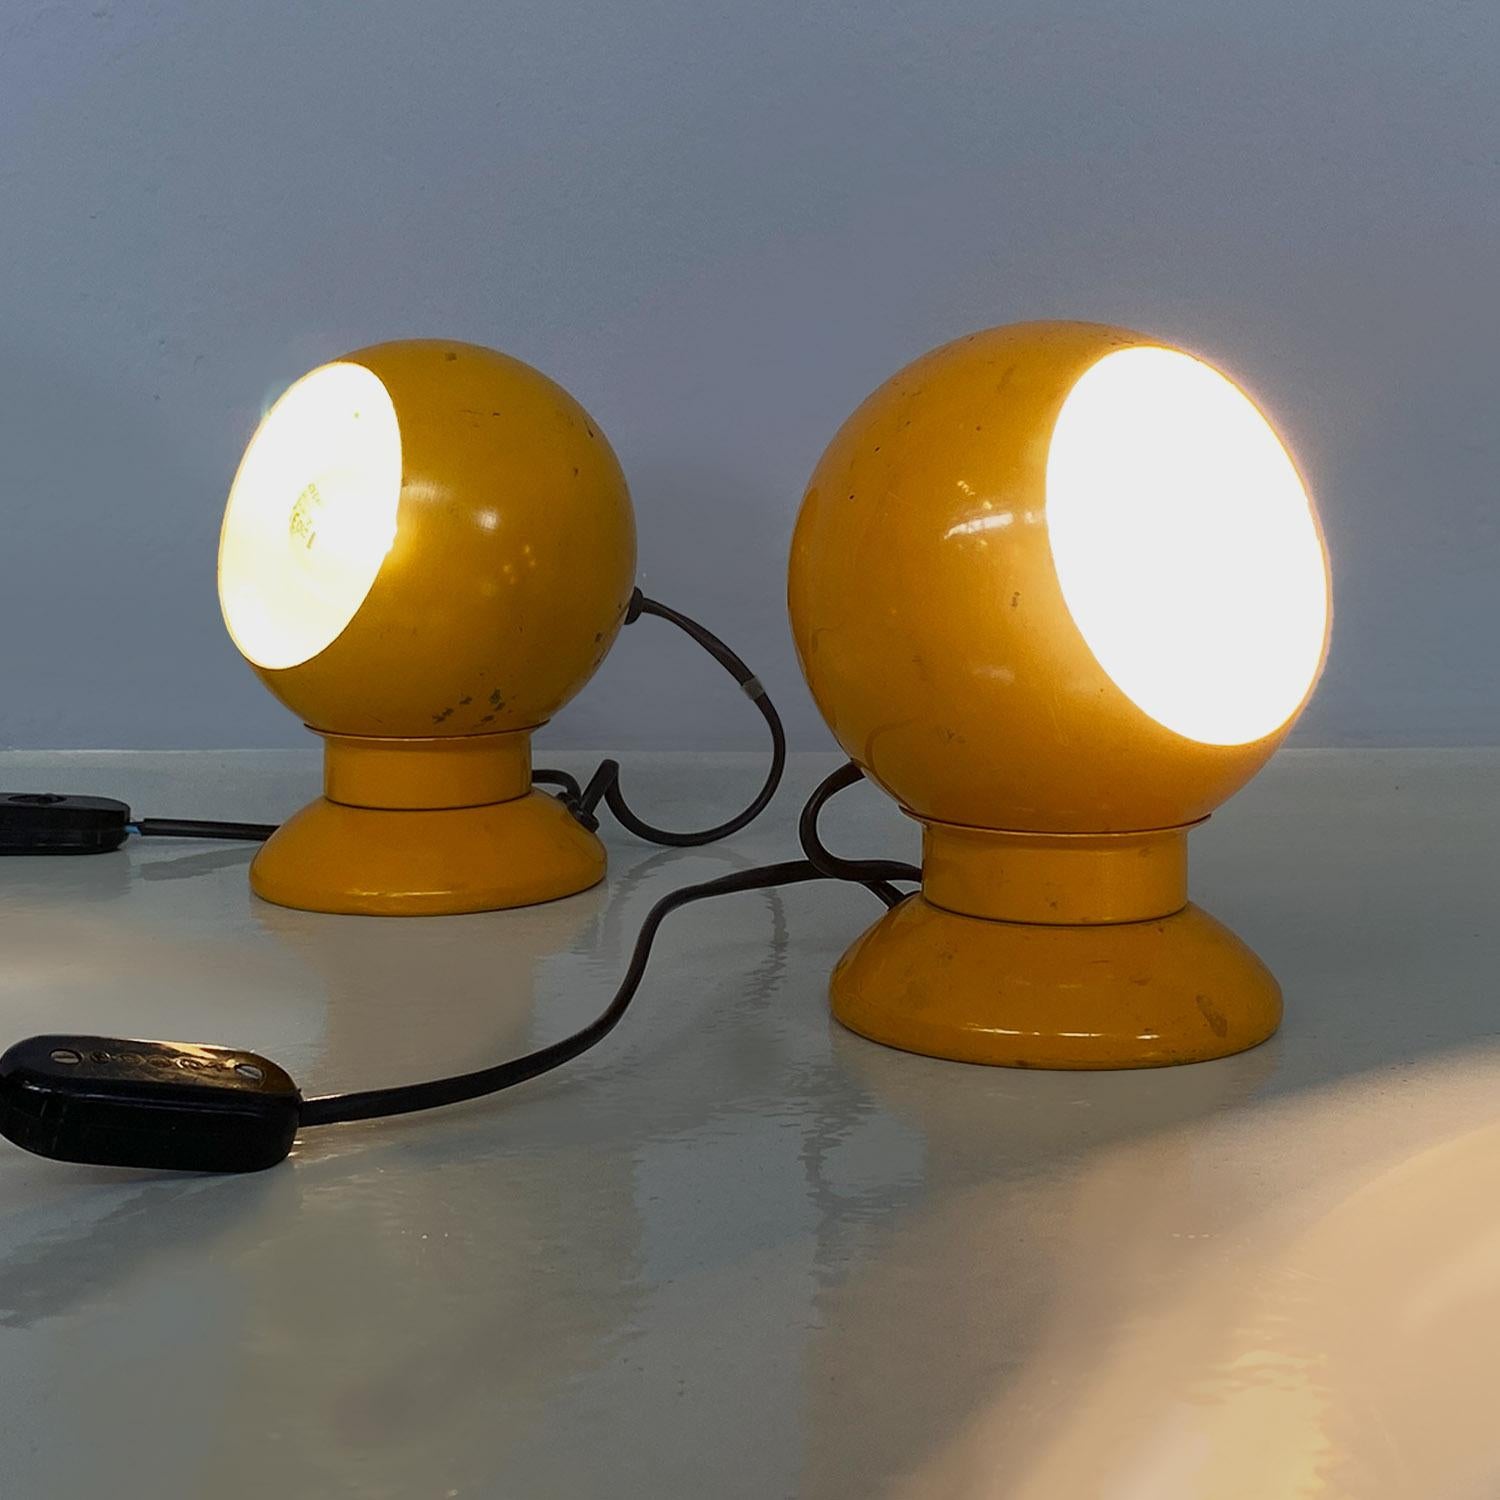 Lampes de table modernes italiennes en métal jaune ou en applique par Goffredo Reggiani pour Reggiani Illuminazione, années 1970.
Paire de lampes de table, avec support et possibilité de les suspendre au mur en tant qu'appliques, en métal émaillé